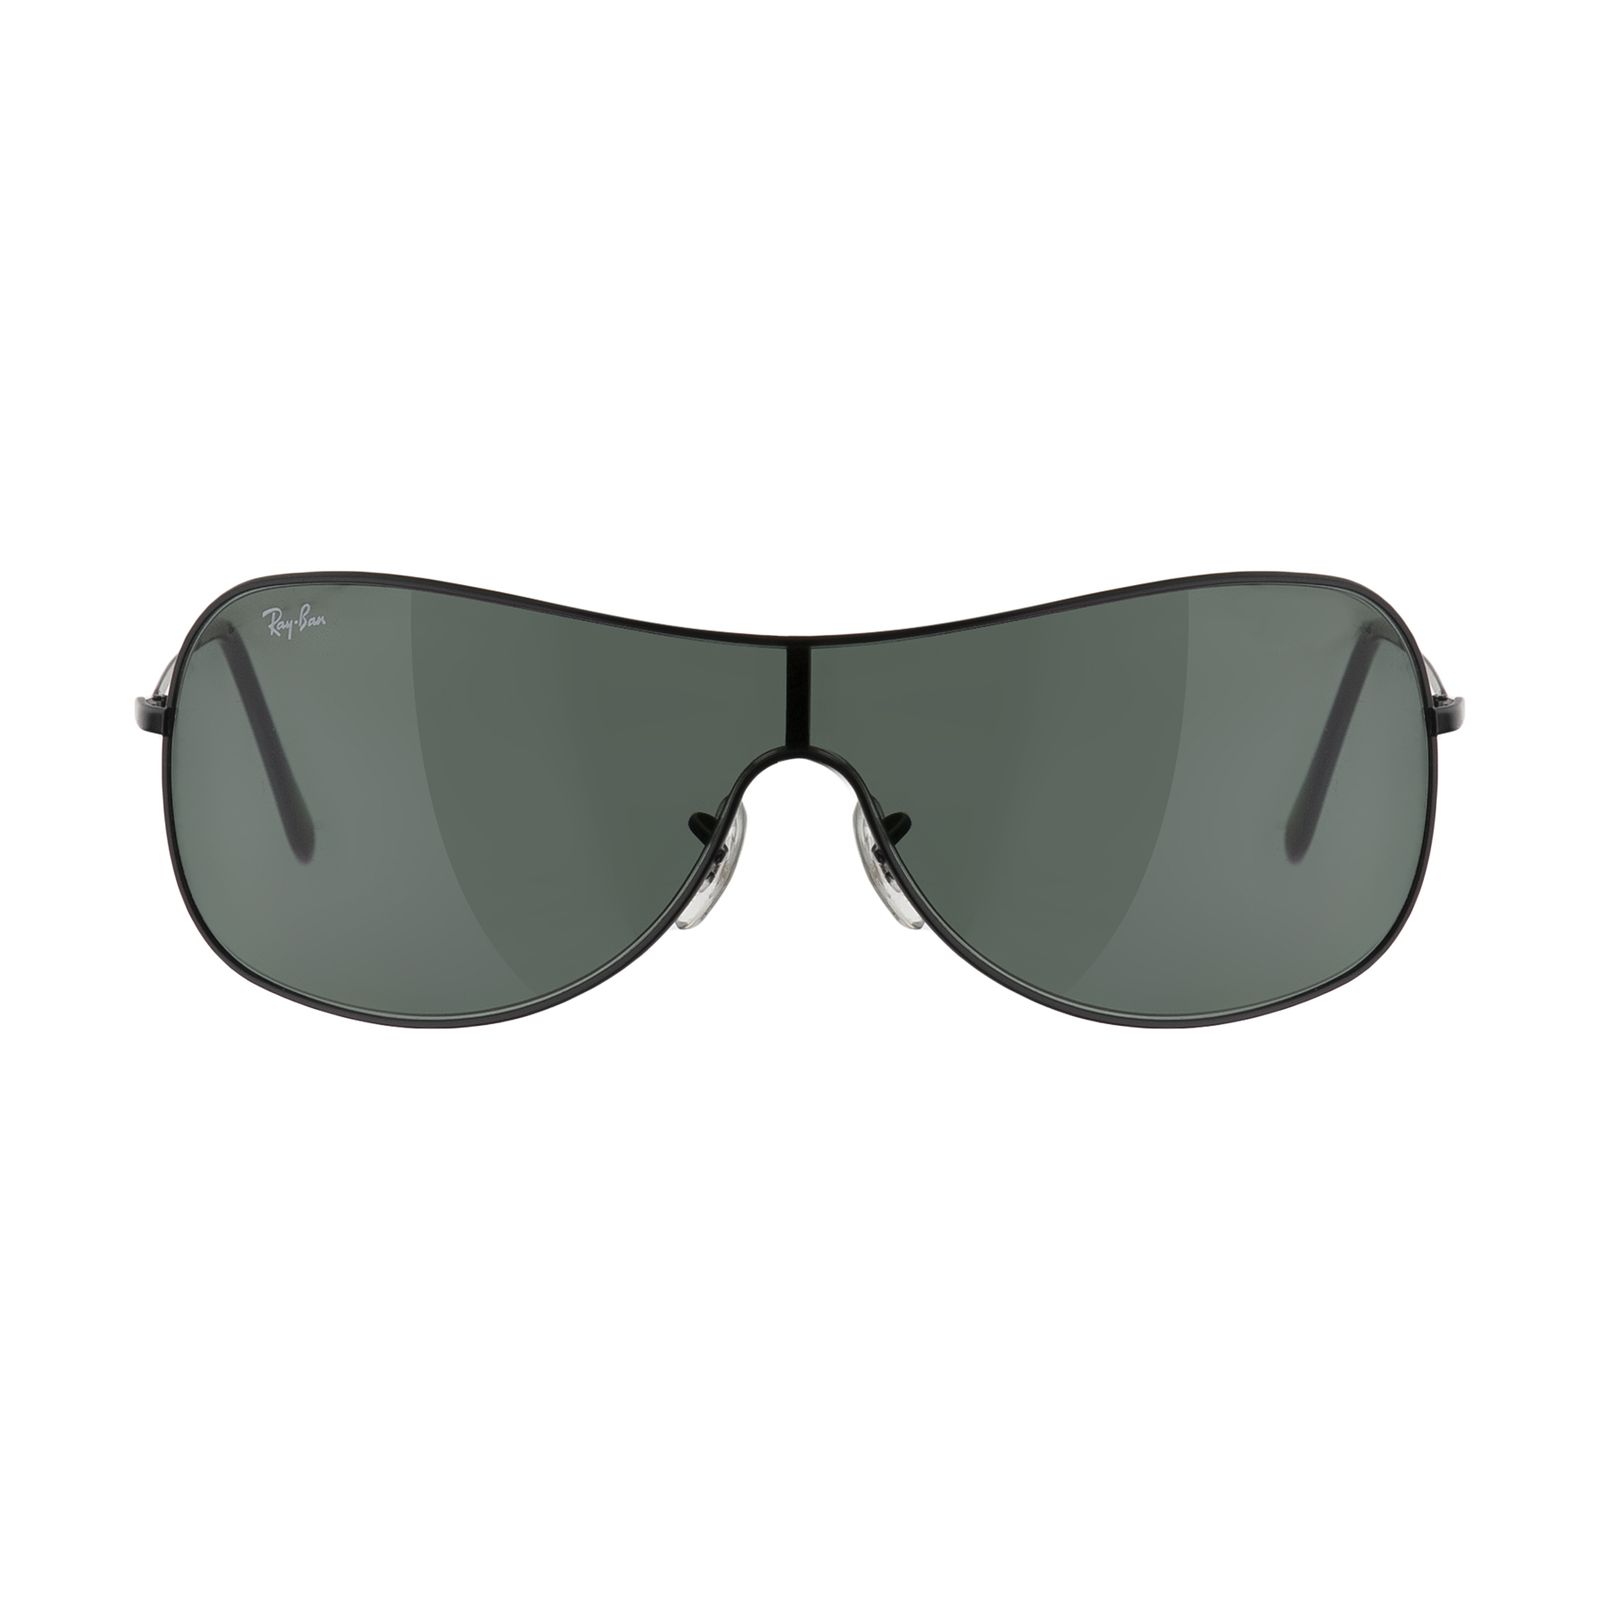 عینک آفتابی ری بن مدل 3211-006/71-38 -  - 1